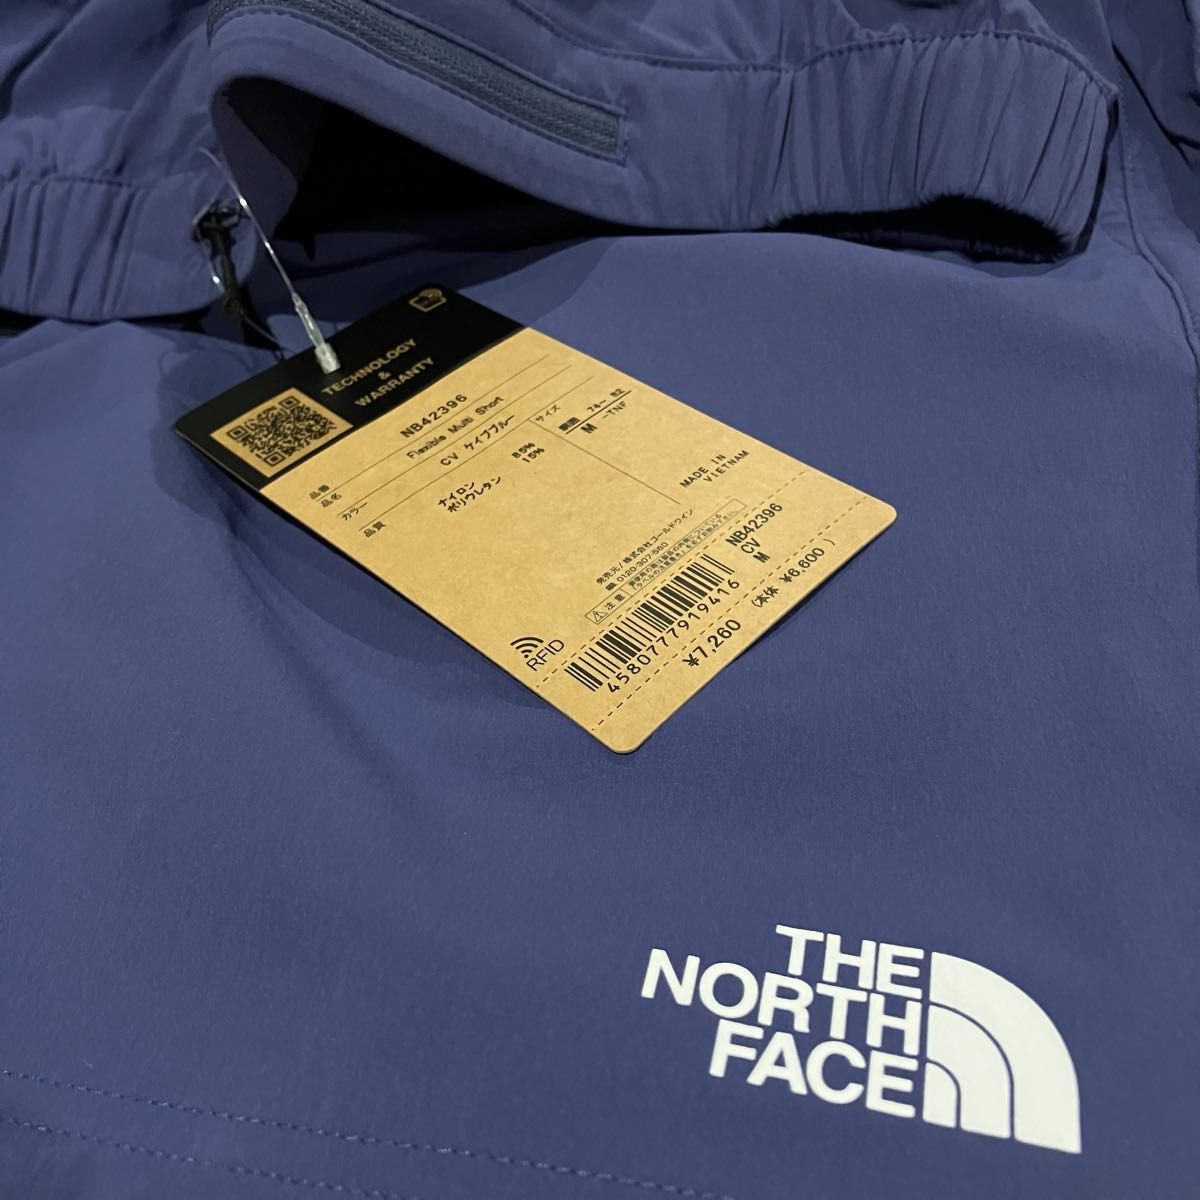 THE NORTH FACE ザノースフェイス ショートパンツ フレキシブルマルチショーツ NB42396ブルー(青)メンズM新品